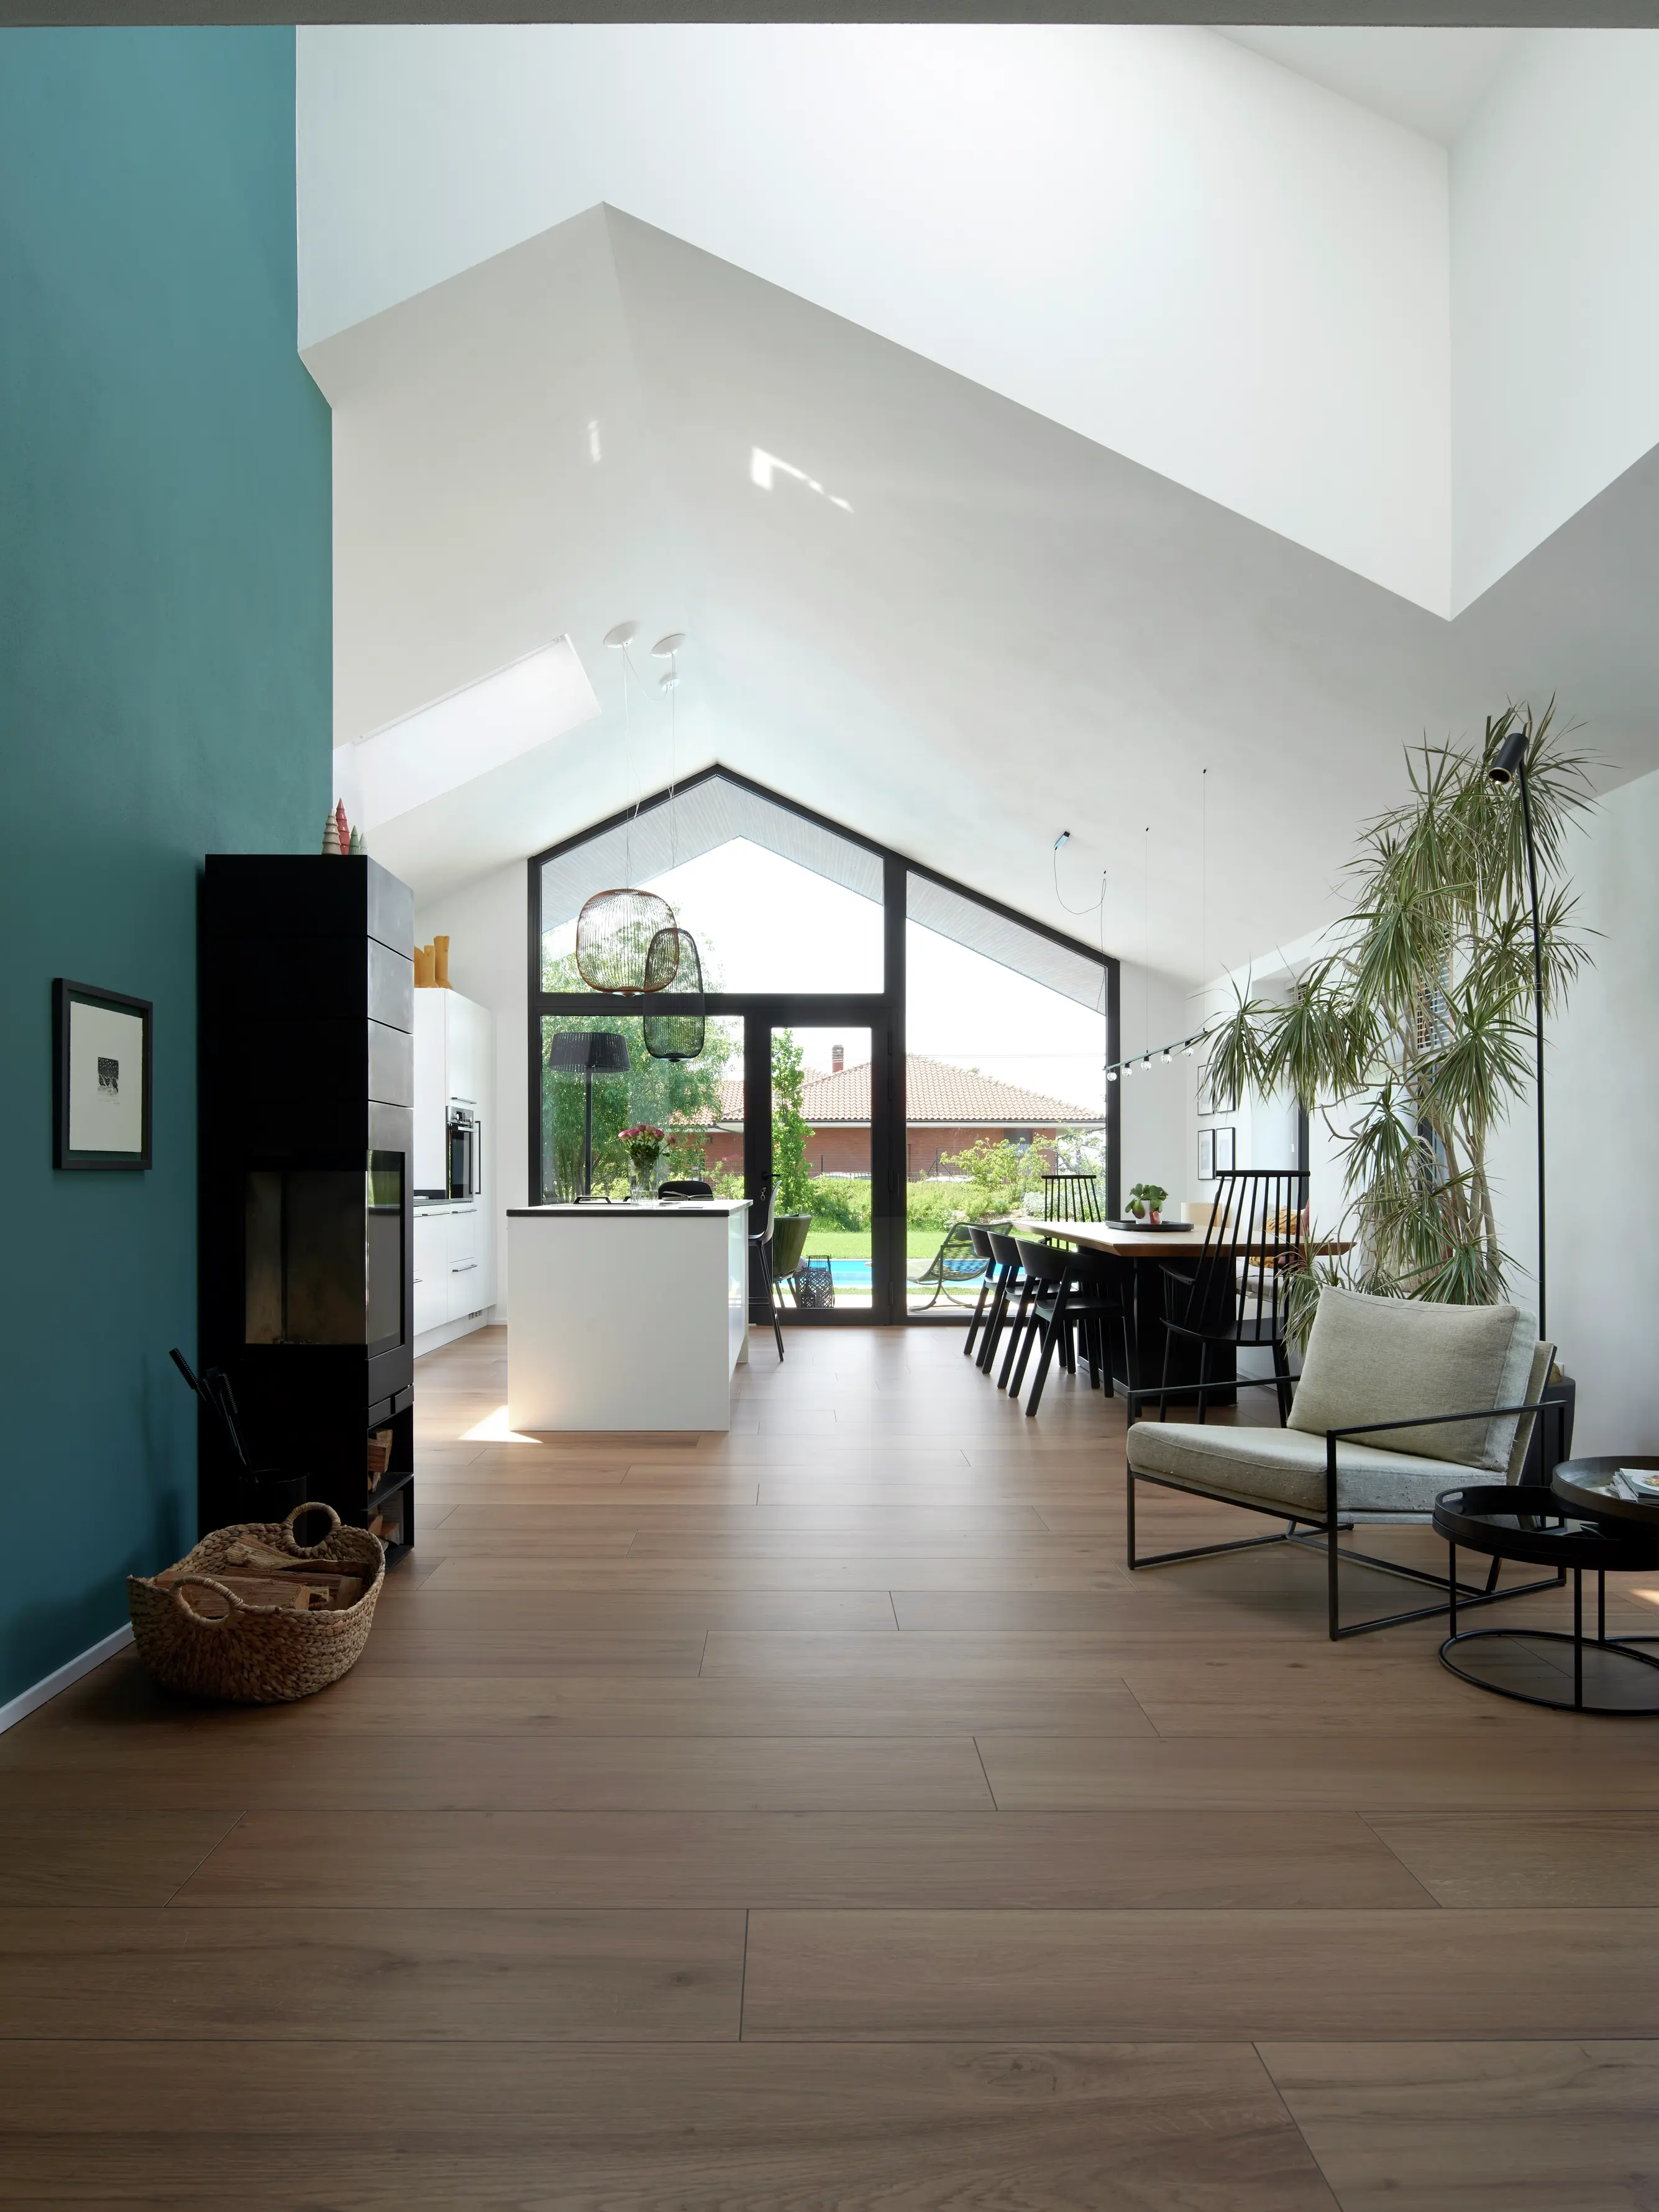 Soggiorno moderno con finestre per tetti VELUX, pavimenti in legno e vista sul giardino.